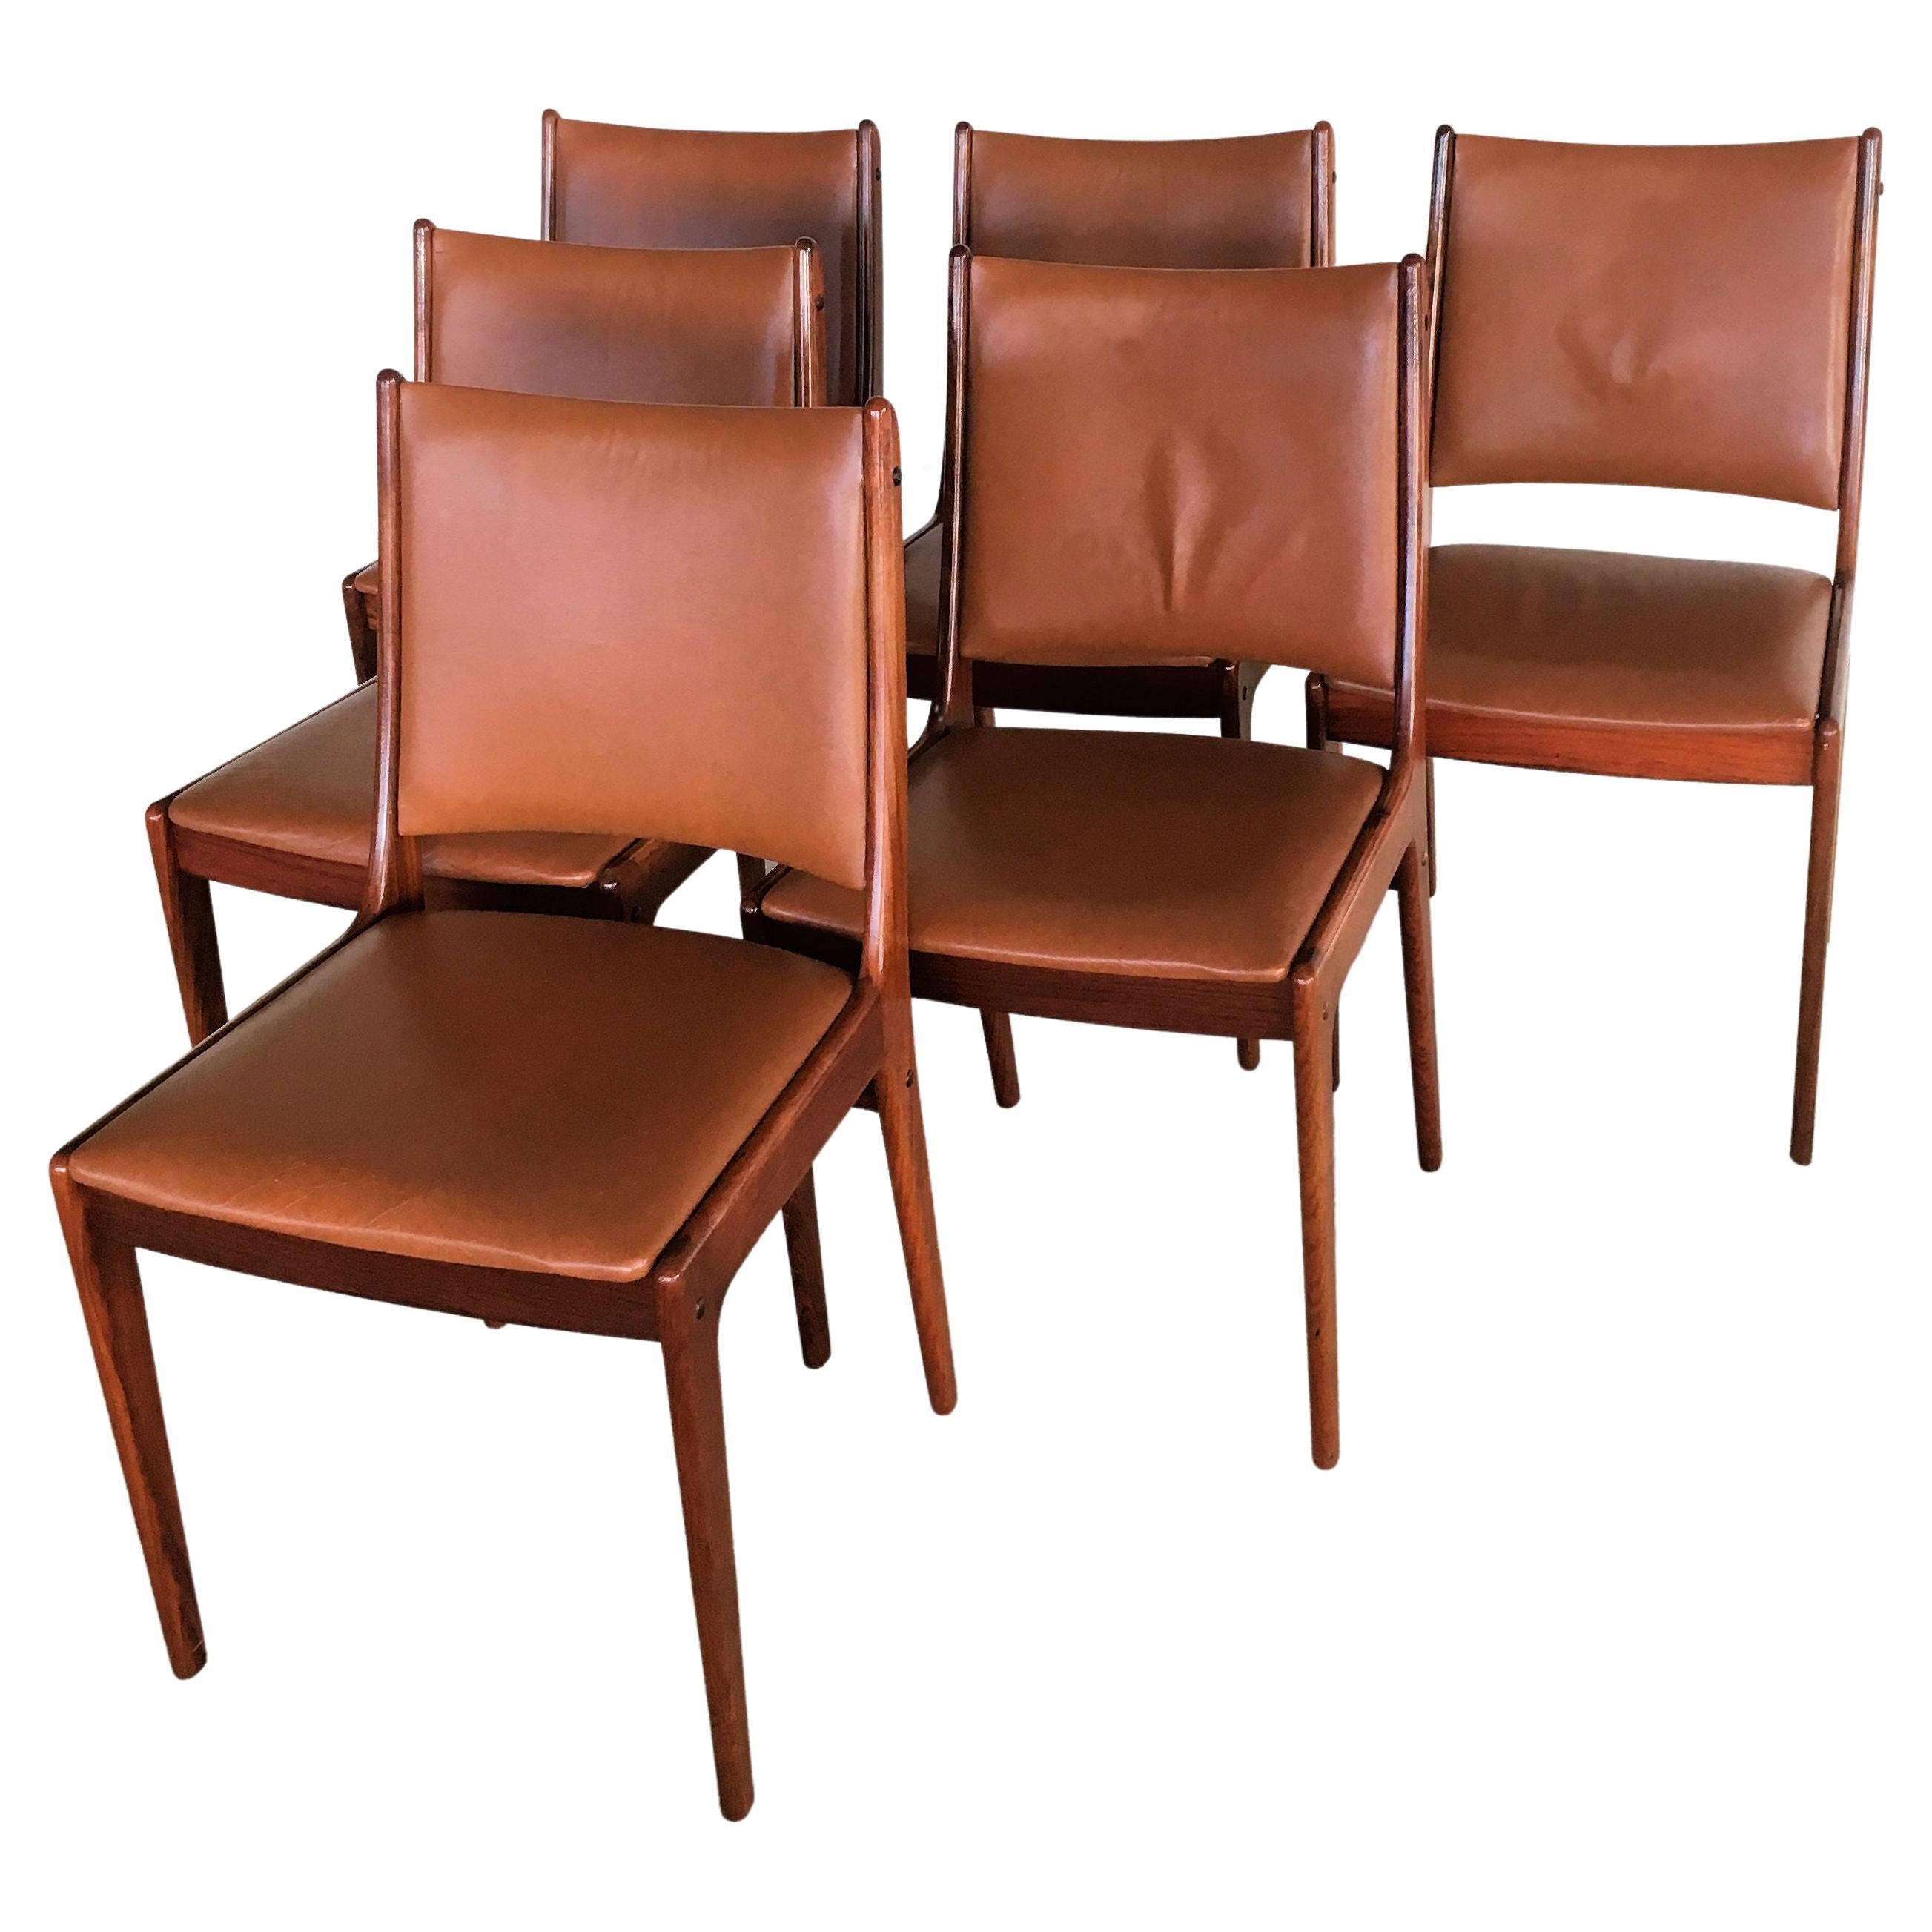 Six chaises de salle à manger restaurées Johannes Andersen en bois de rose, tapisserie personnalisée incluse